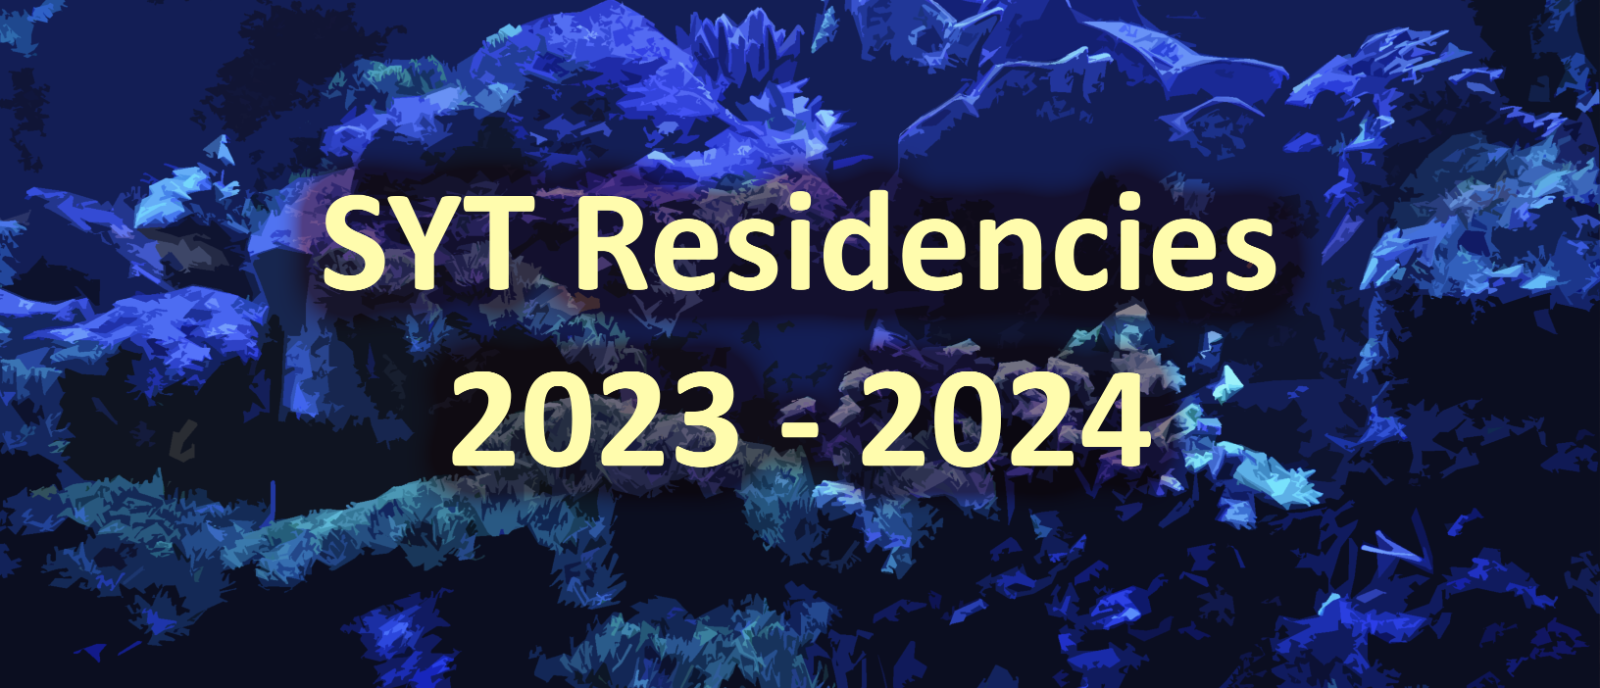 SYT Residencies 2023 - 2024